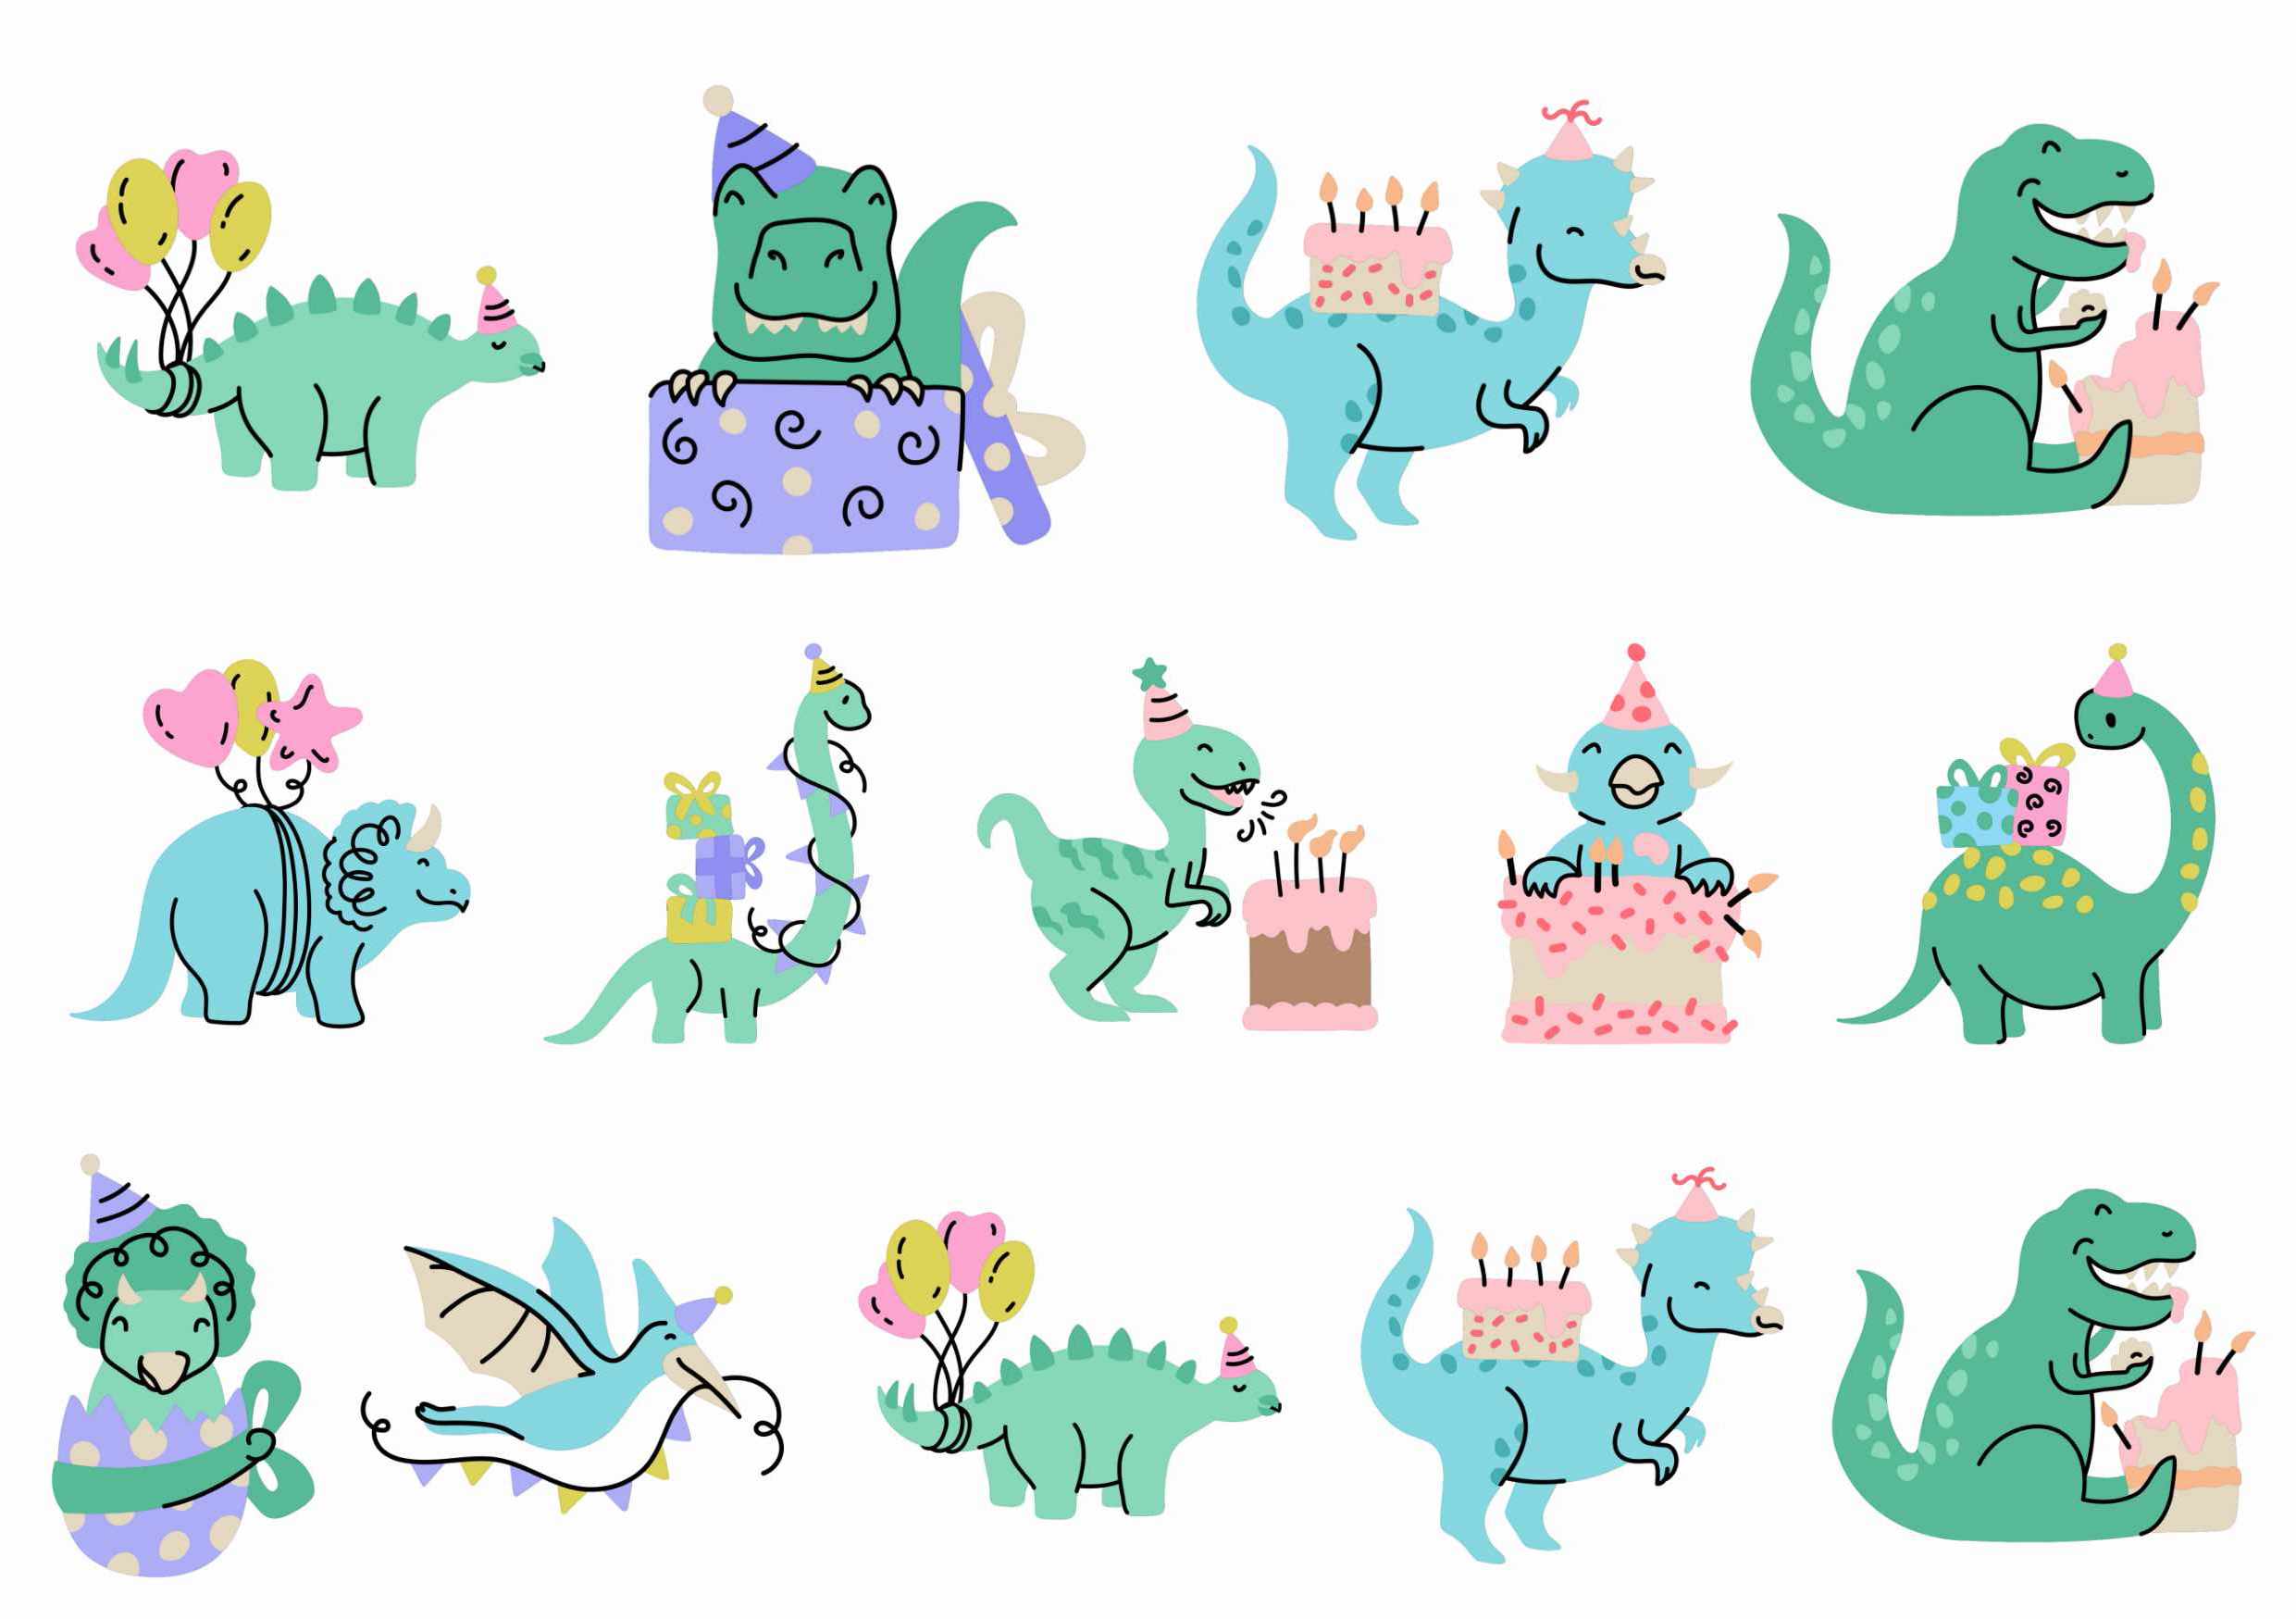 Fira födelsedag med gnuggisar från like ink + dinosaurier